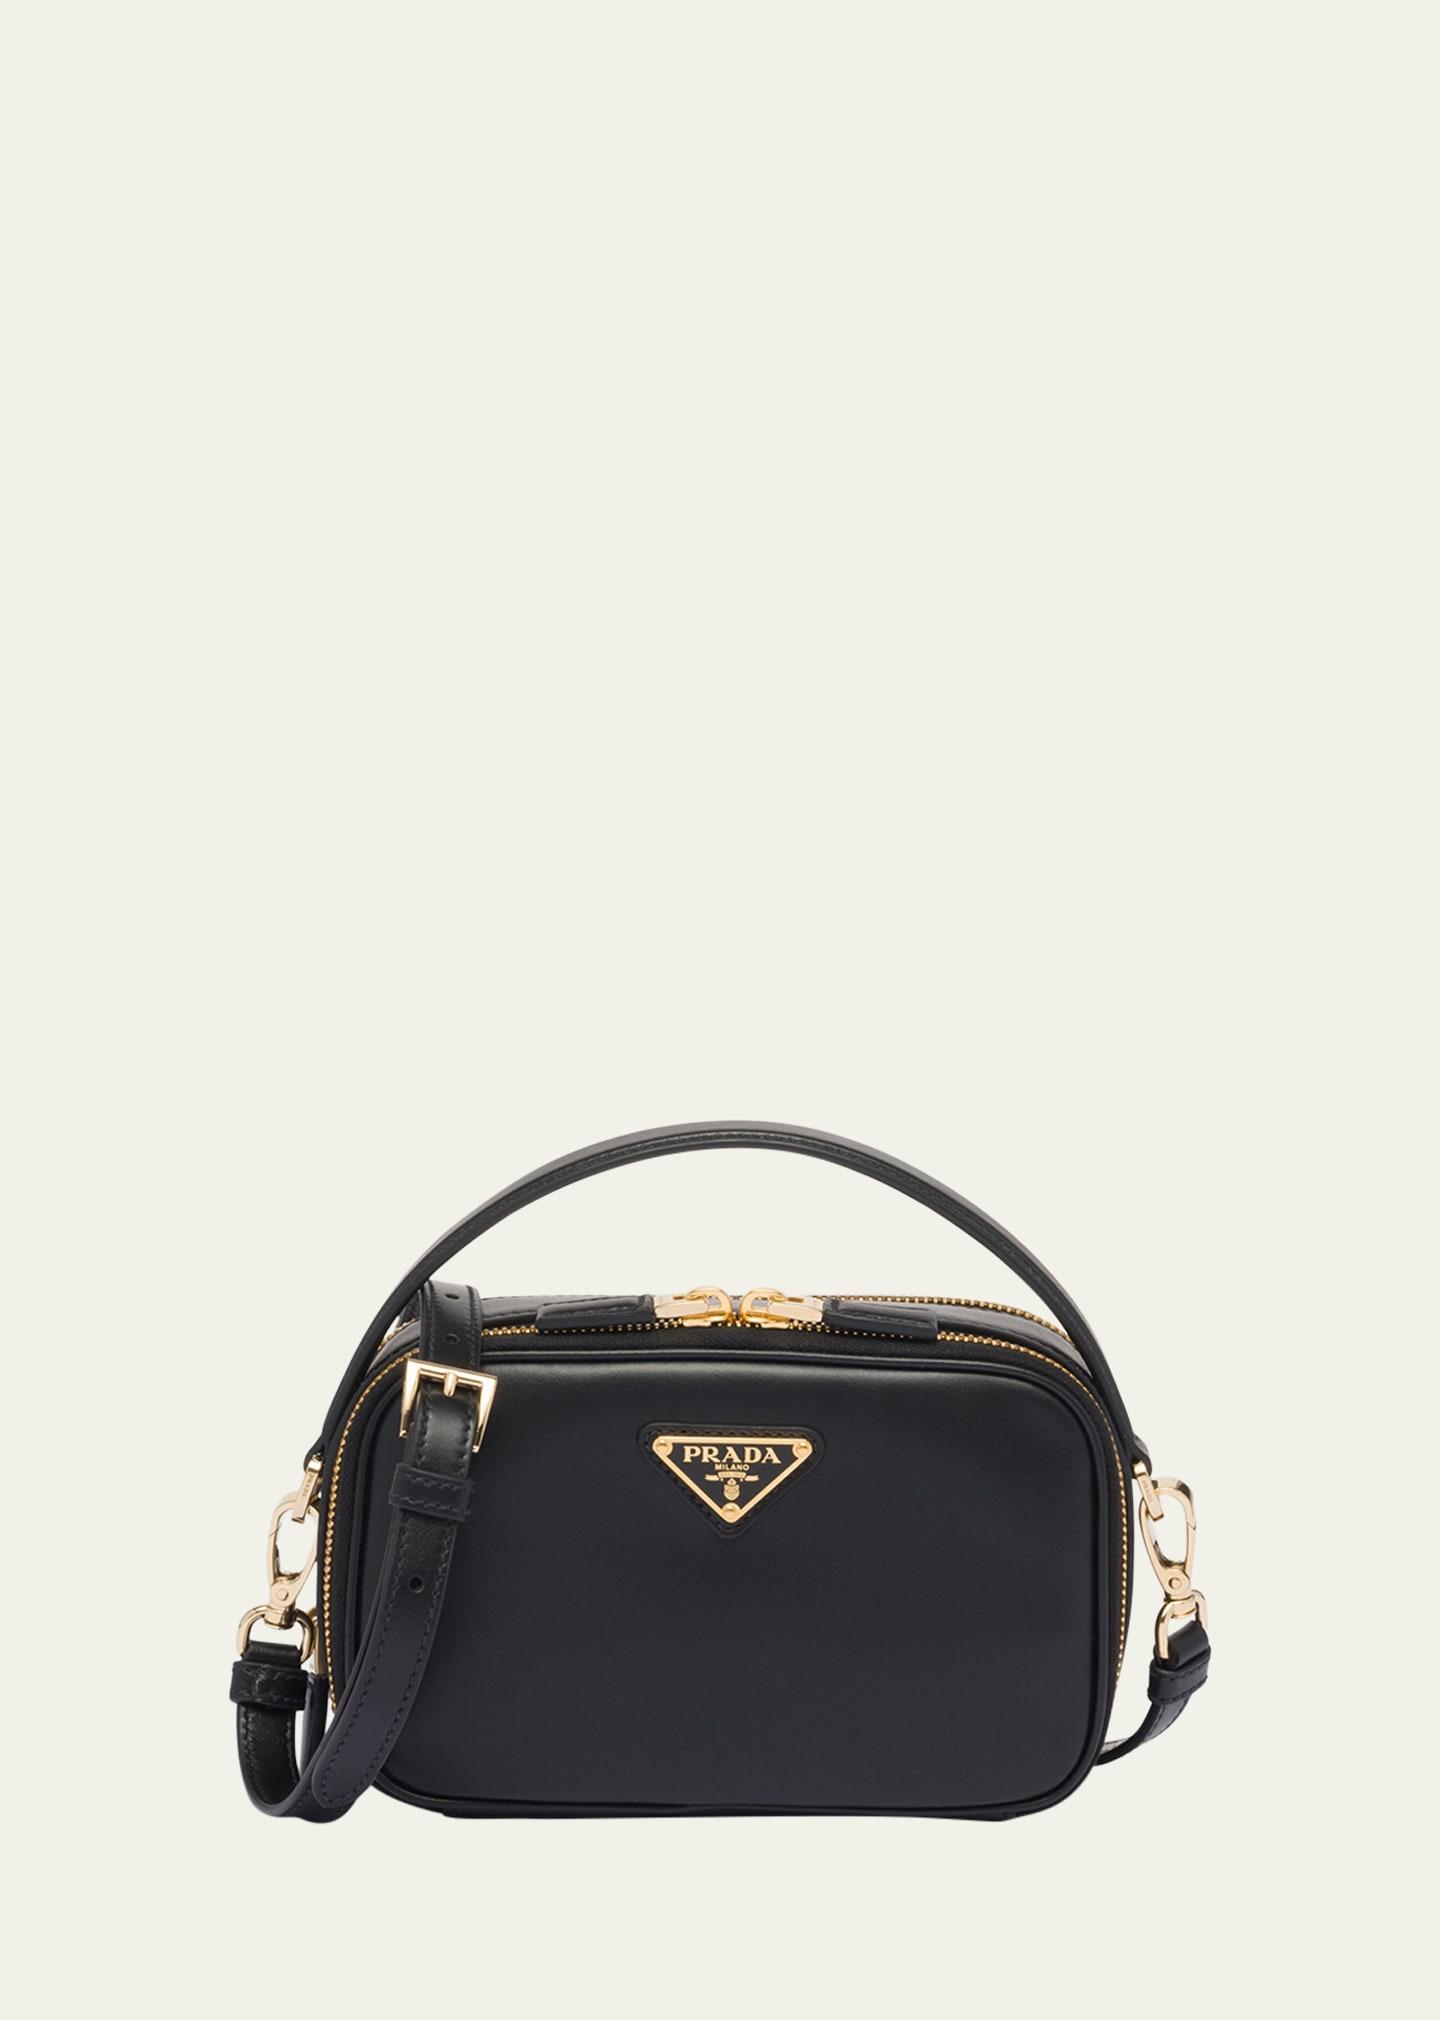 Shoulder bags Prada - Odette blue saffiano leather handbag